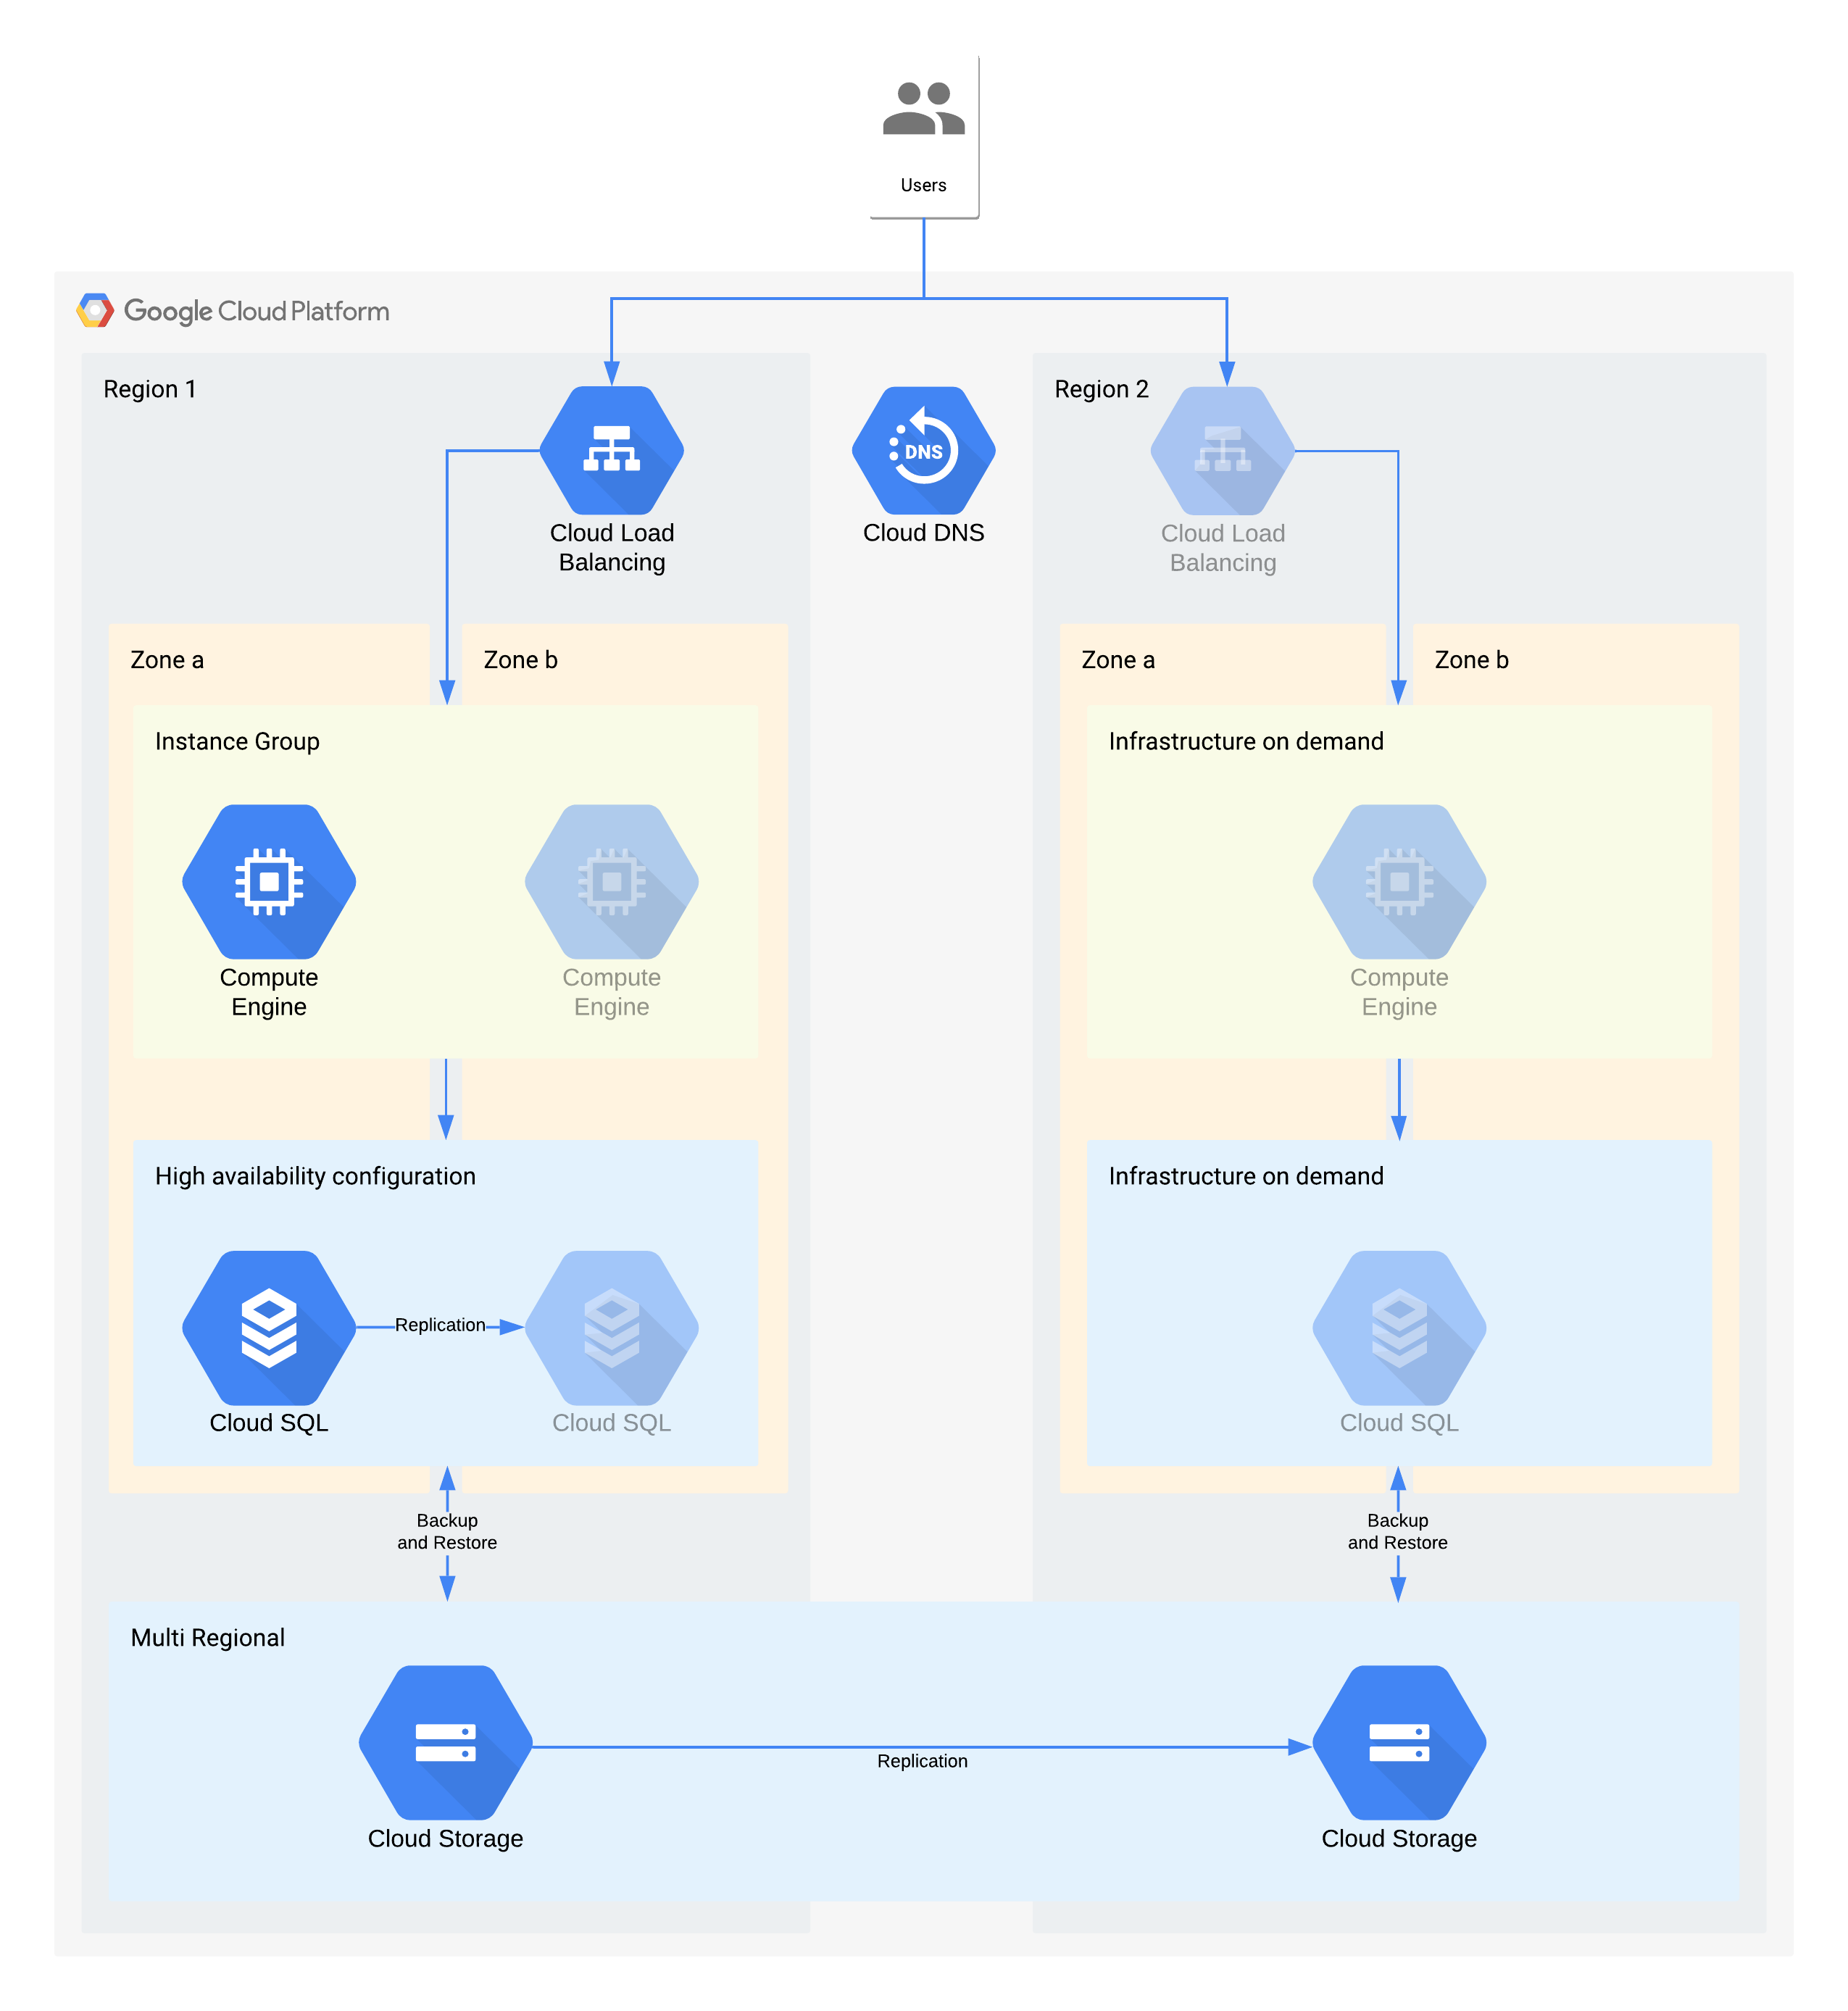 Un esempio di architettura di livello 3 che utilizza i prodotti Google Cloud